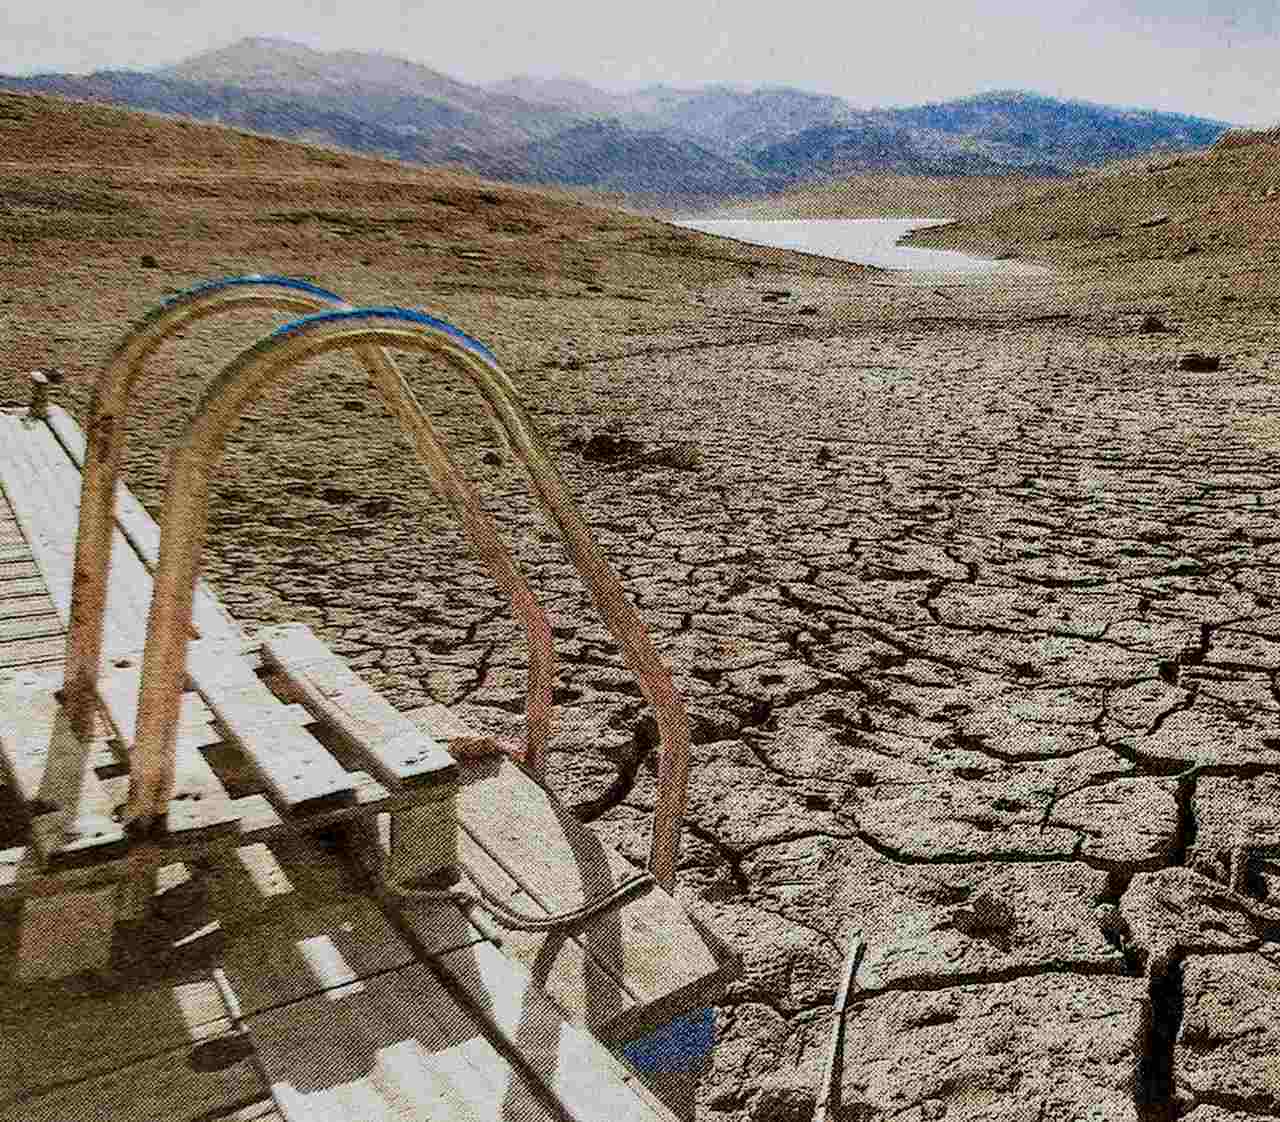 Brian Hayhurst sobre la sequía en España, donde se puede cortar el agua de la noche a la mañana